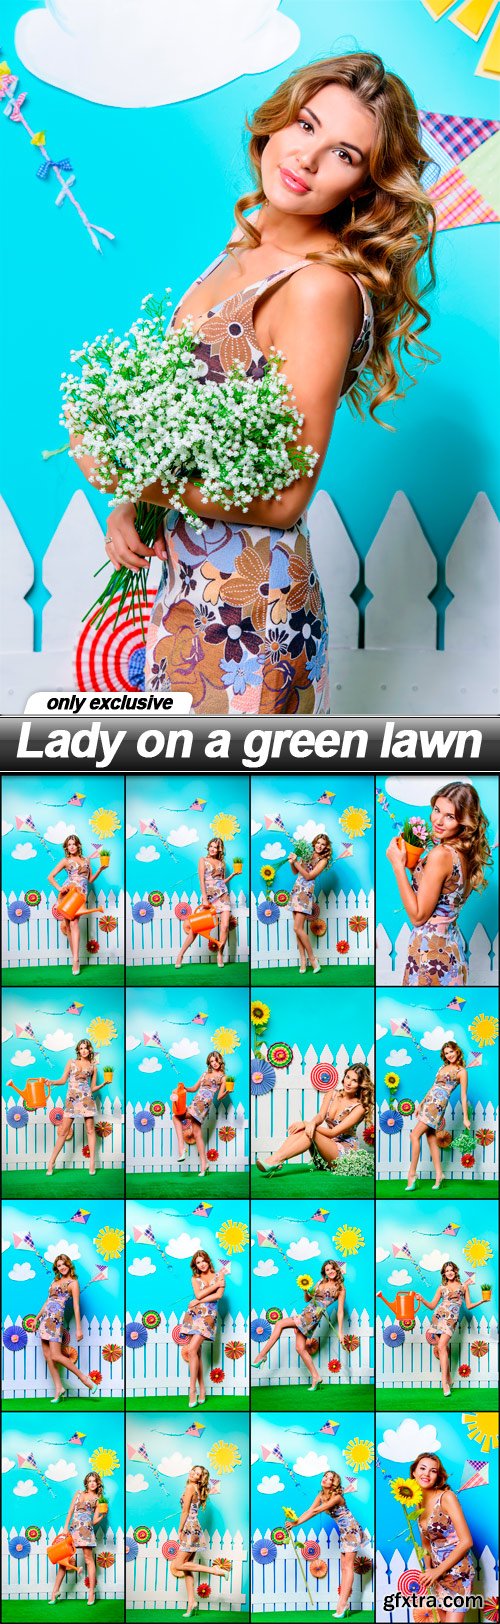 Lady on a green lawn - 17 UHQ JPEG